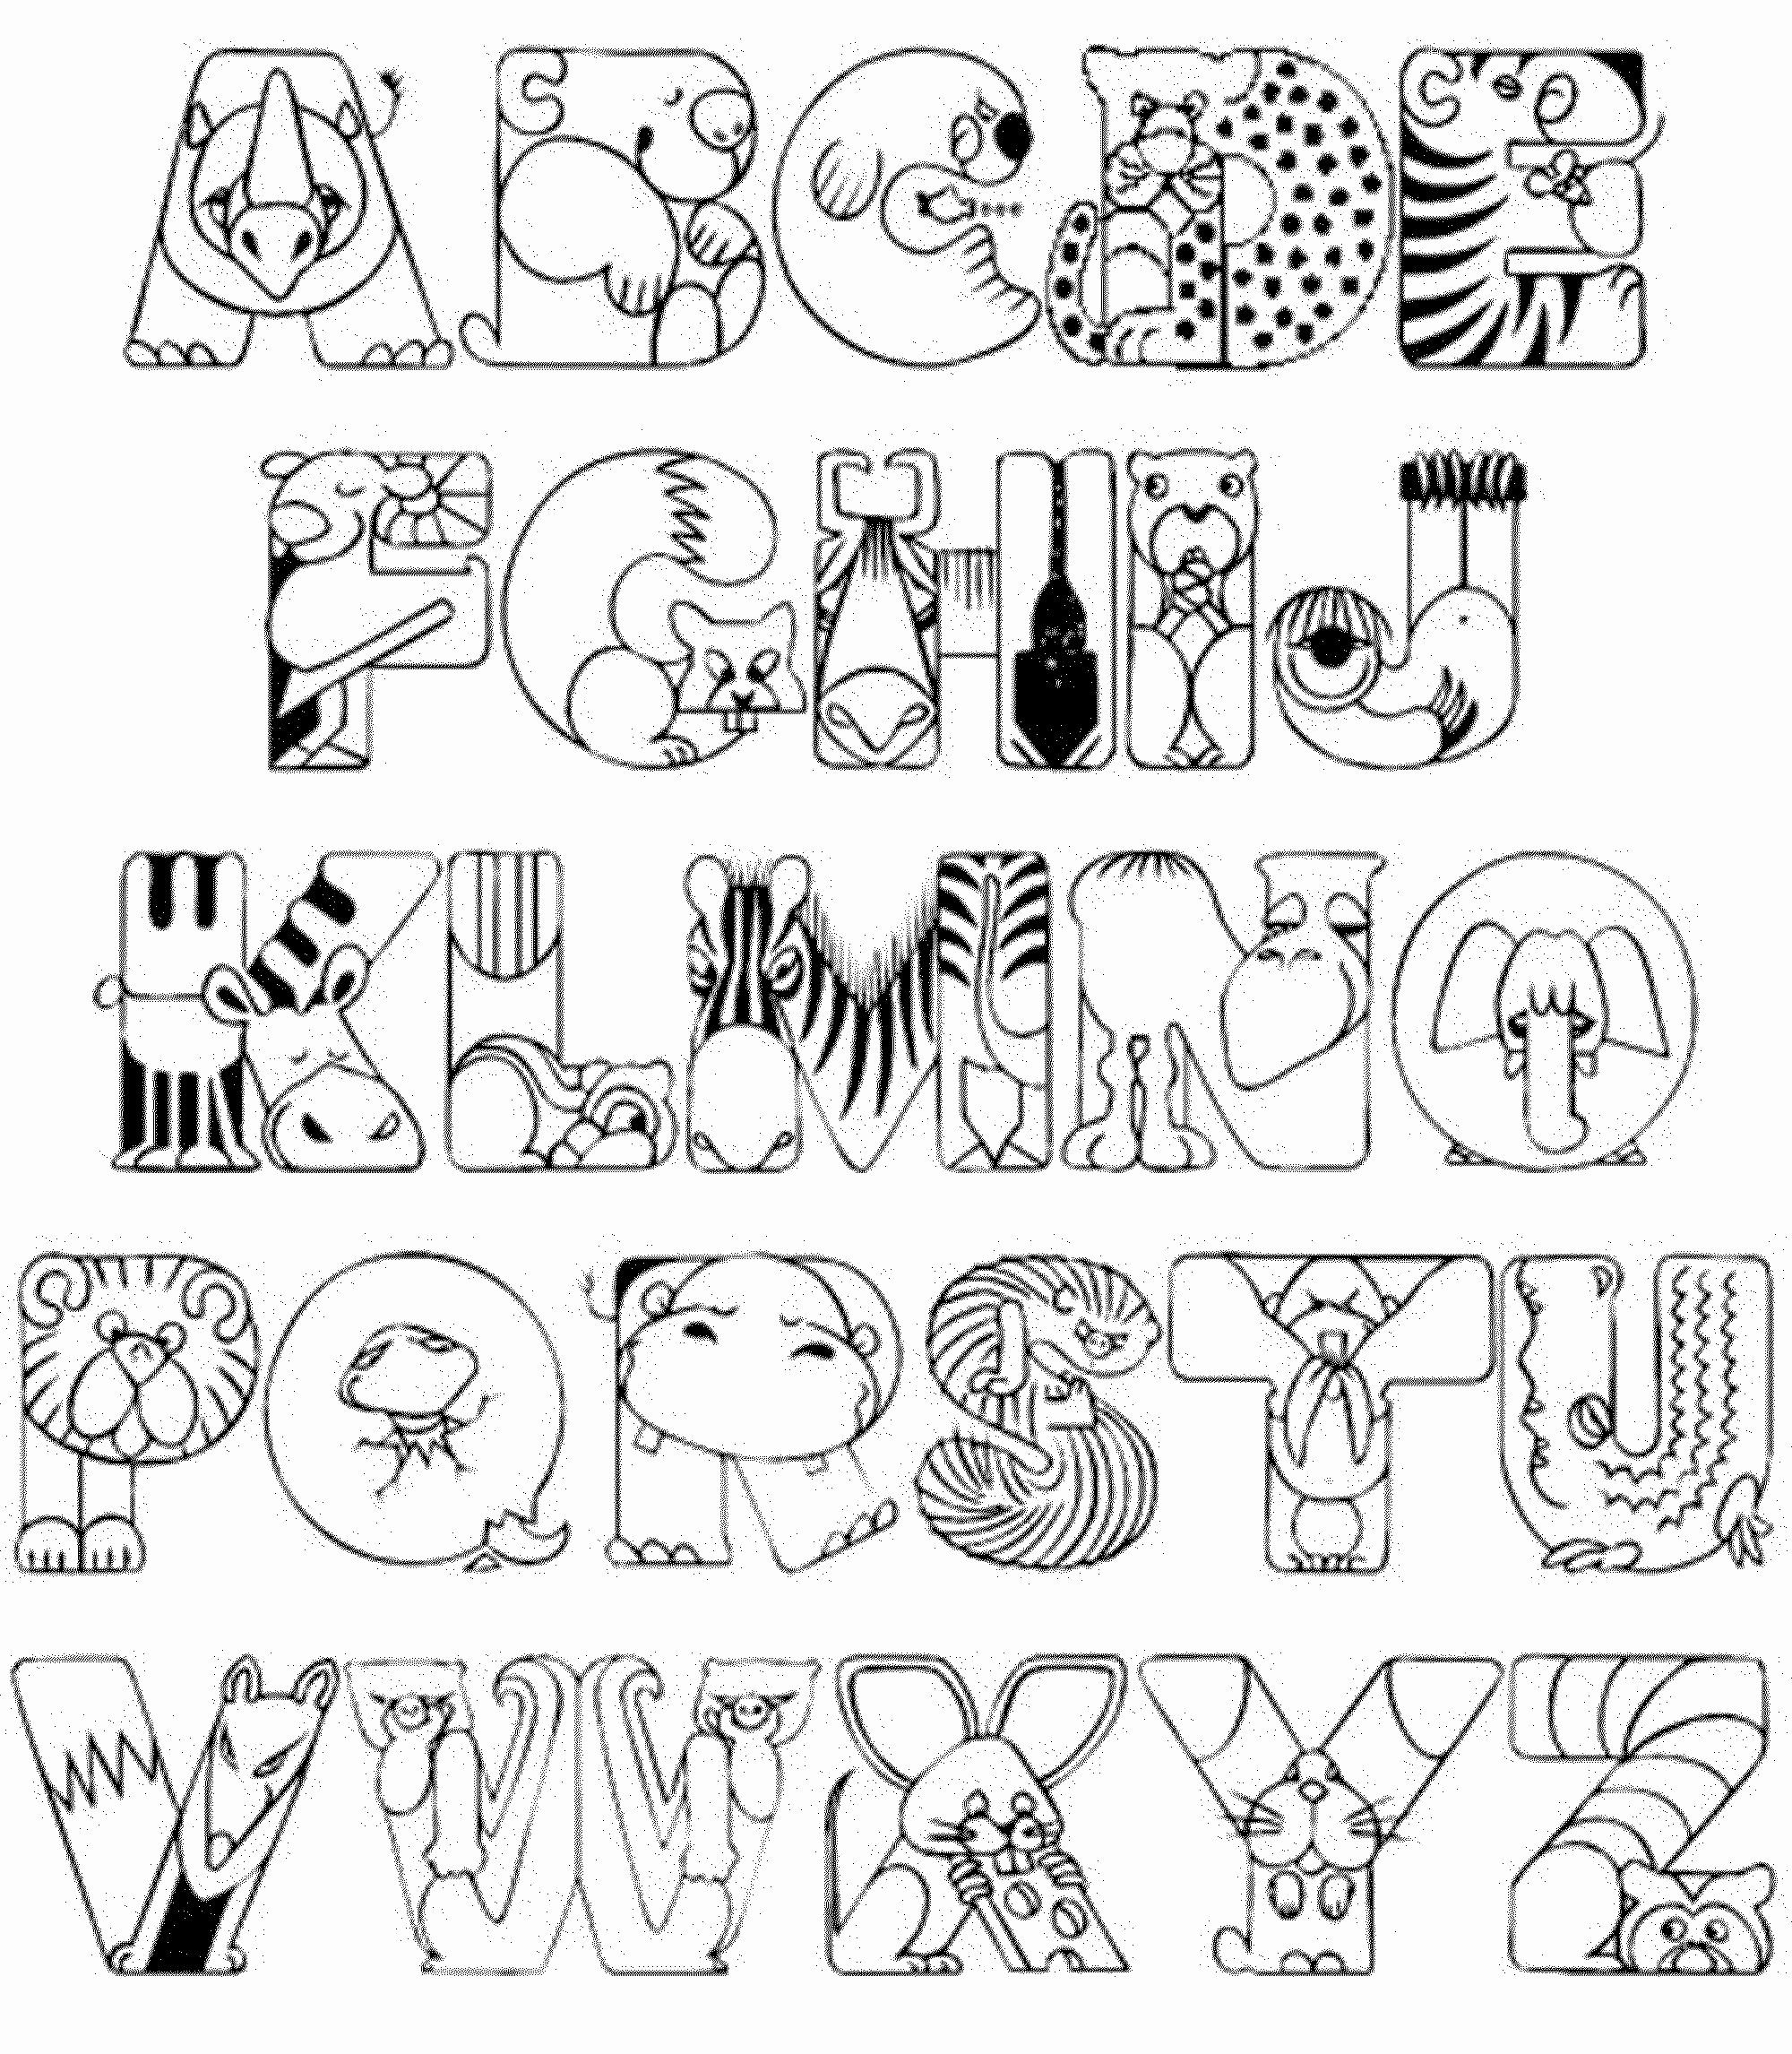 alphabet coloring pages preschool pdf